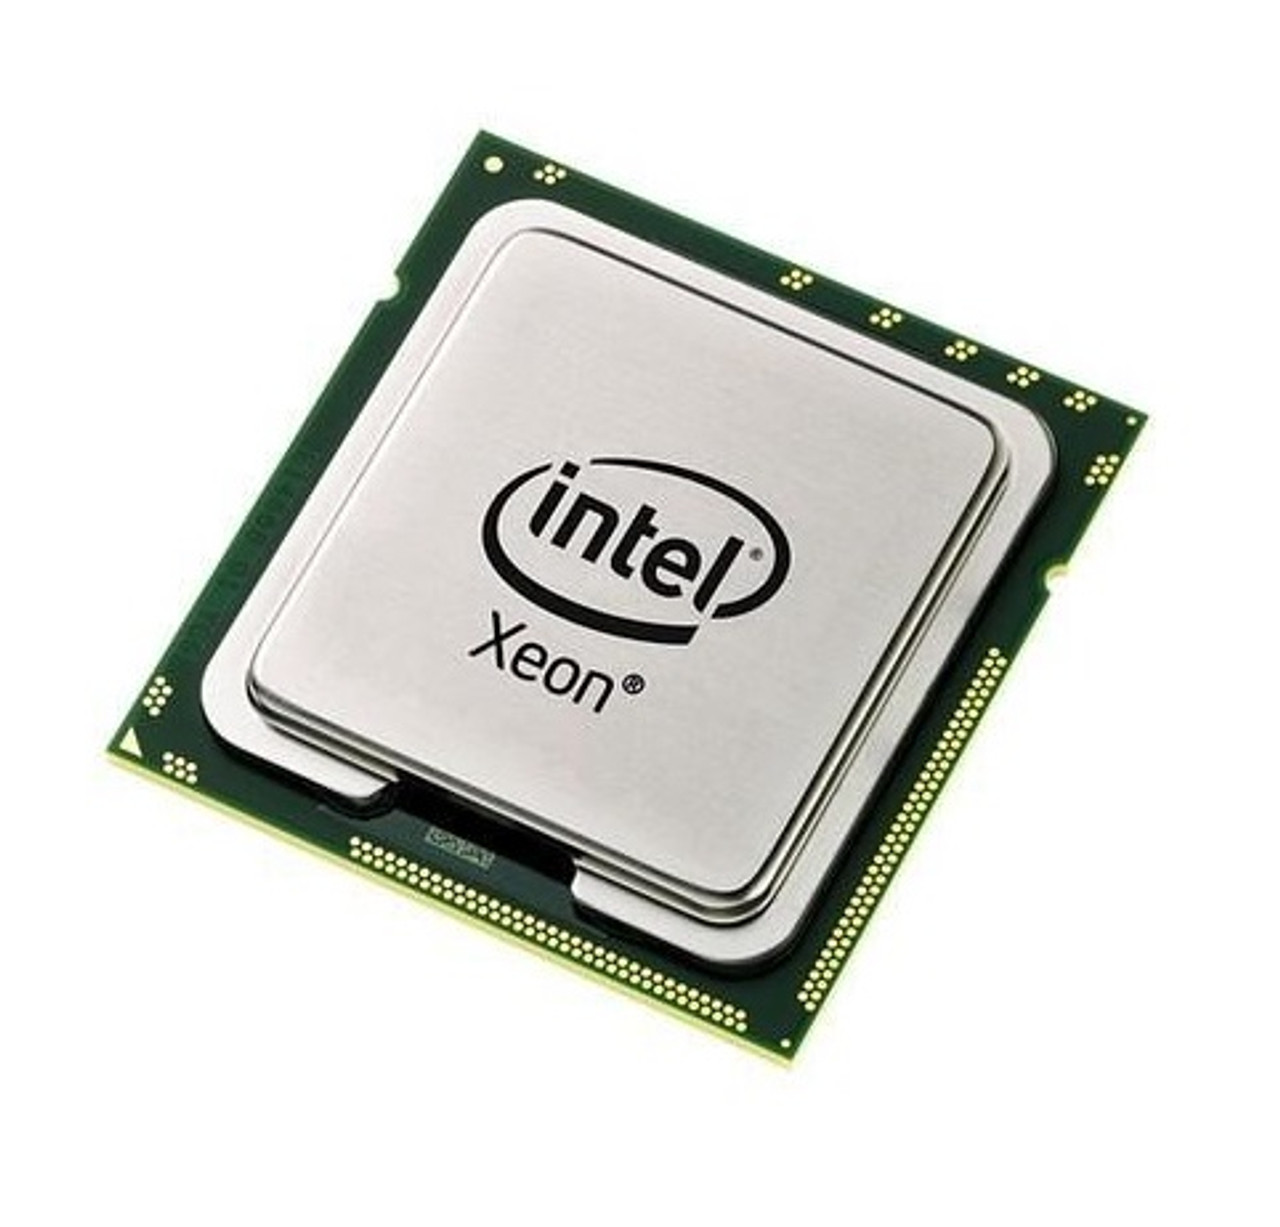 L5420 - Intel Xeon L5420 Quad Core 2.50GHz 1333MHz FSB 12MB L2 Cache Processor